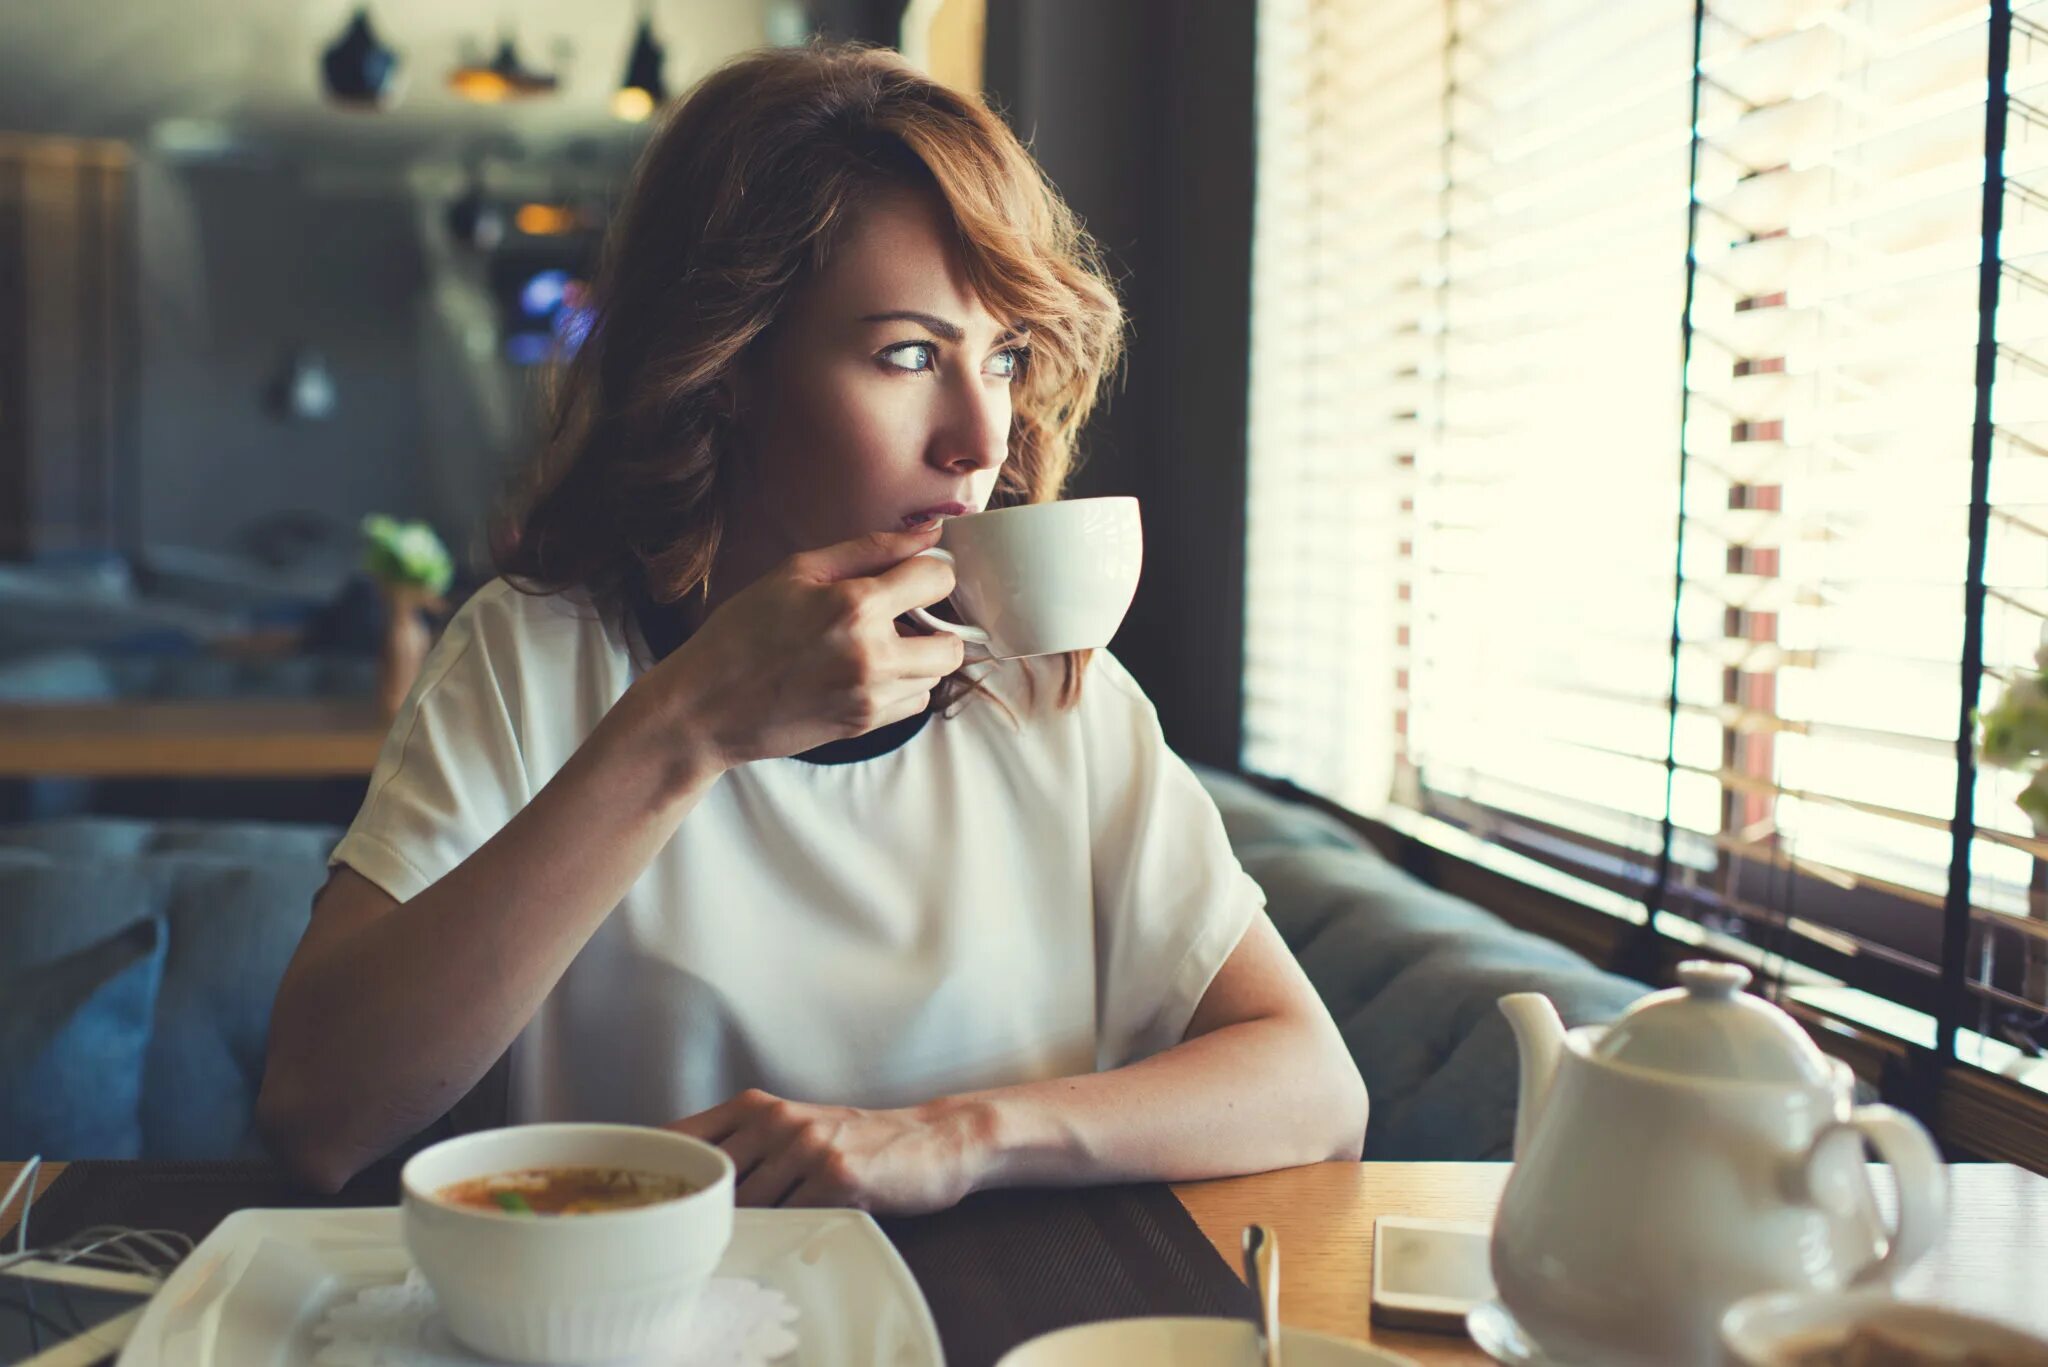 За чашкой кофе. Девушка в кафе. Девушка пьет кофе. Женщина с чашкой кофе. Задумчивая девушка в кафе.